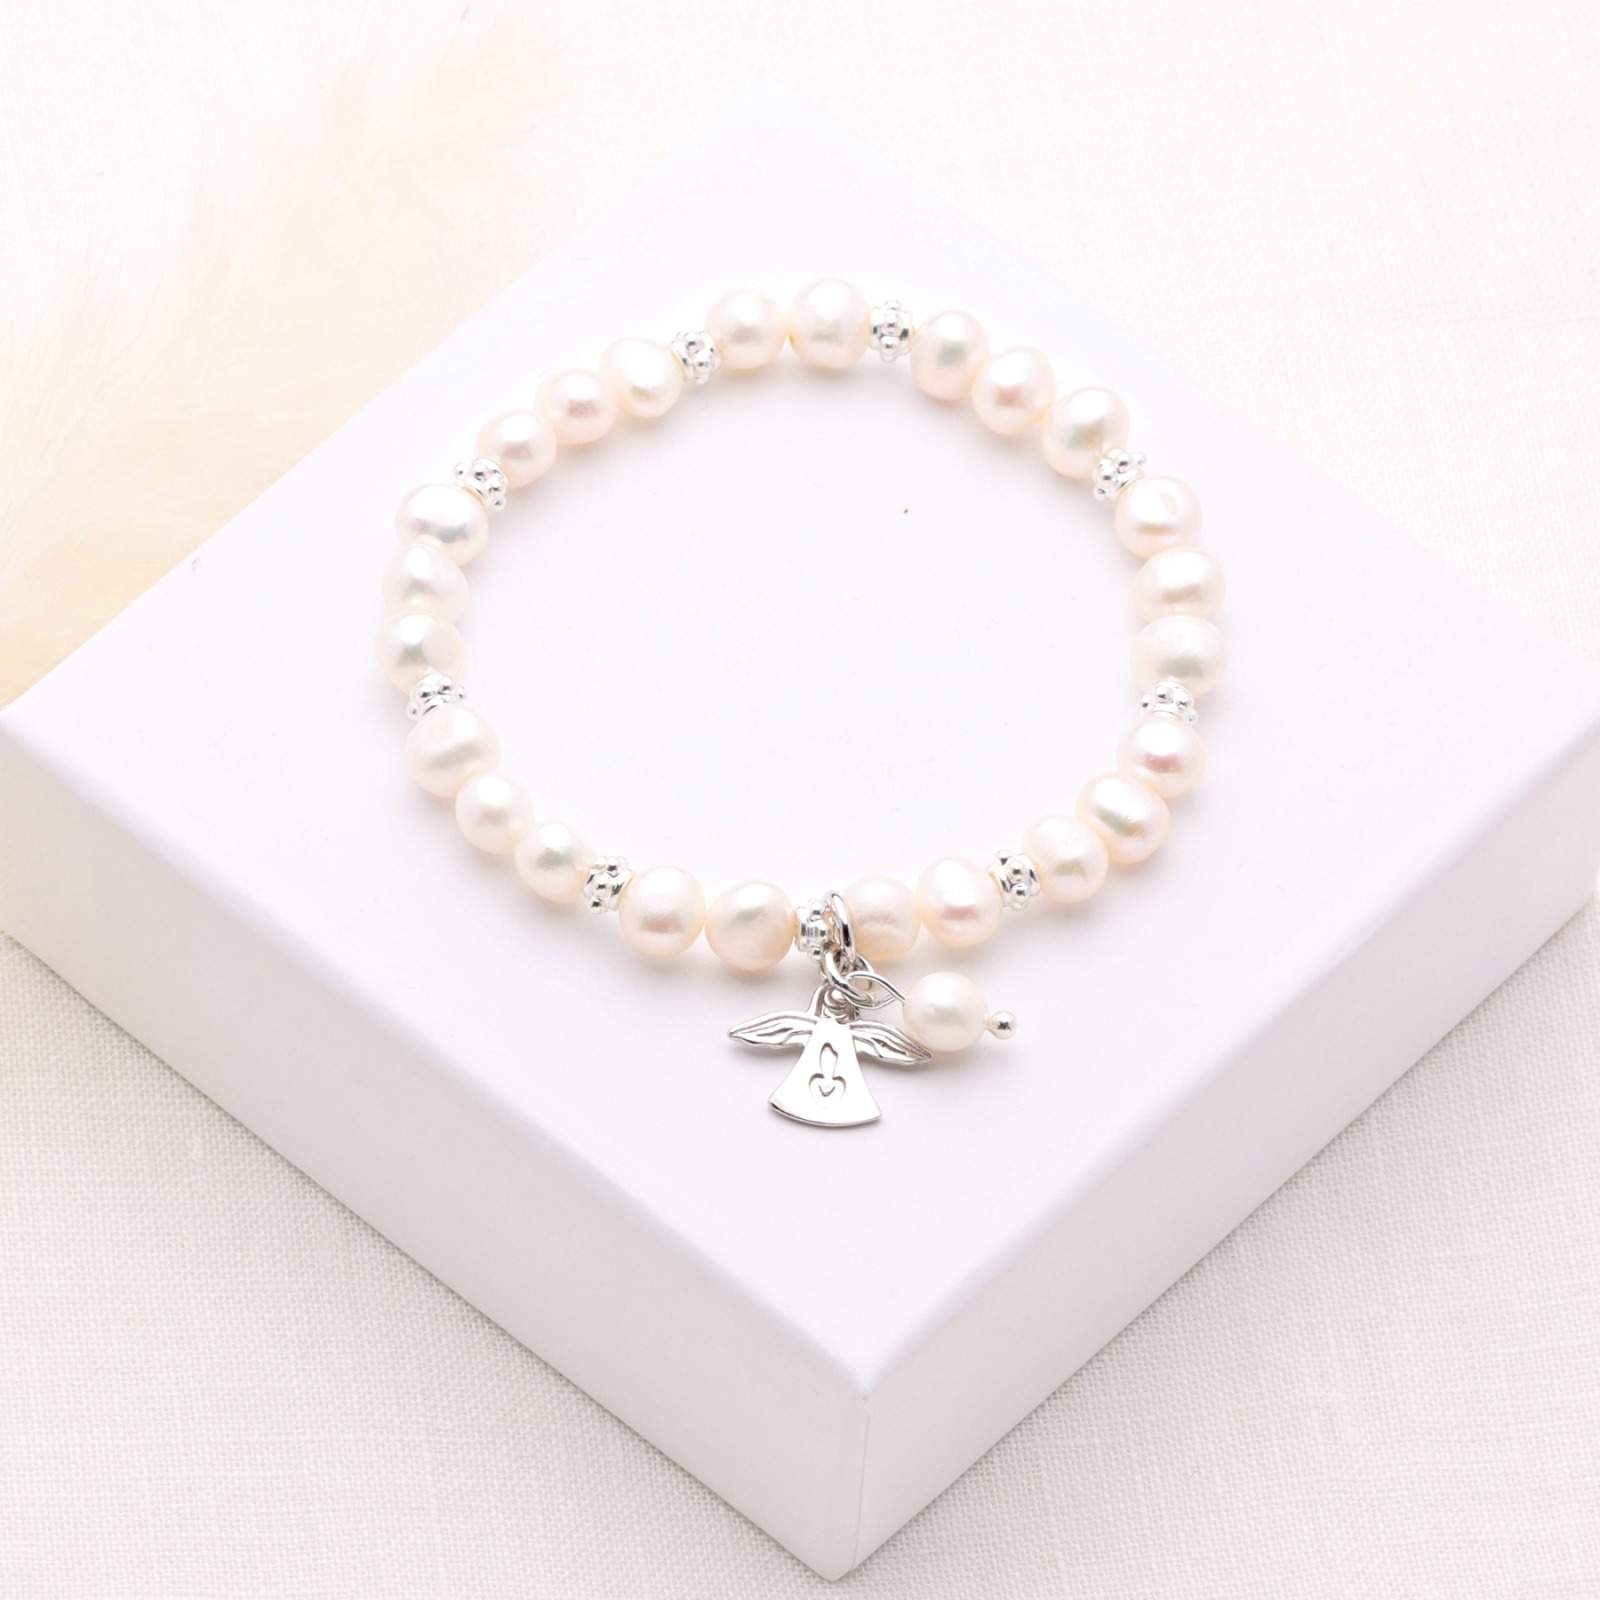 Armband aus echten Perlen mit Schutzengel Silber Geschenk zu Weihnachten elastisch